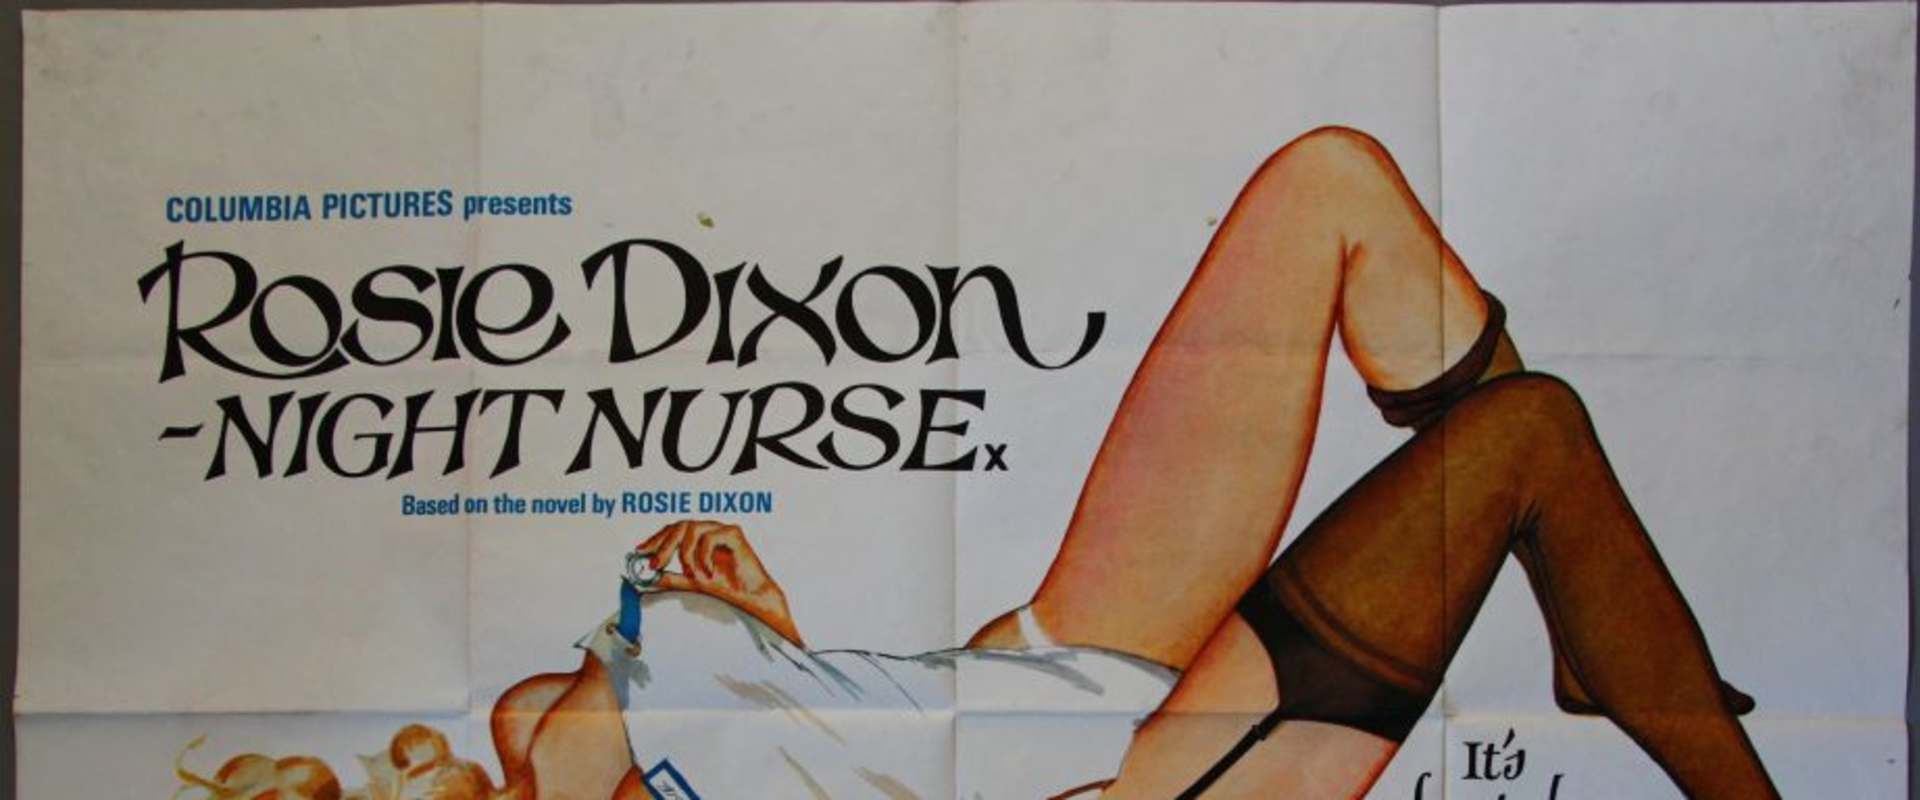 Rosie Dixon - Night Nurse background 1